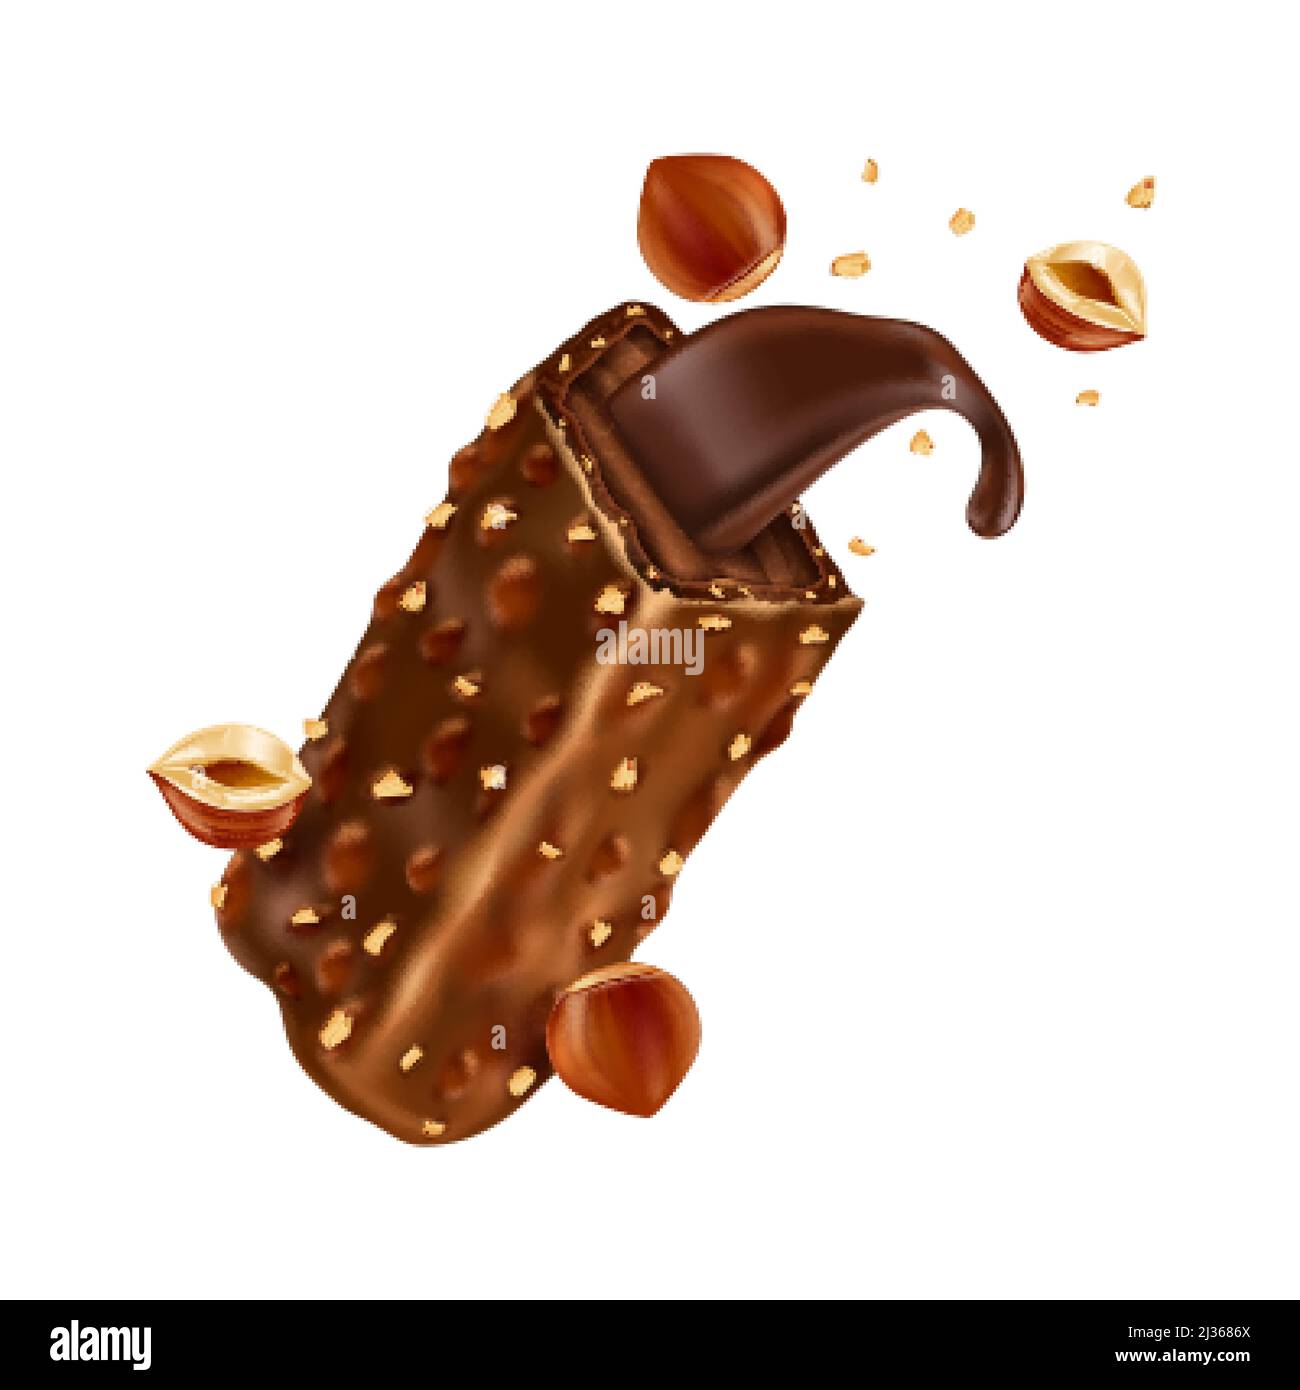 Barre de chocolat sucré avec morceaux de noisettes et caramel. Illustration réaliste vectorielle de bonbons au chocolat brisés avec noix écrasées et isolate de crème de cacao Illustration de Vecteur